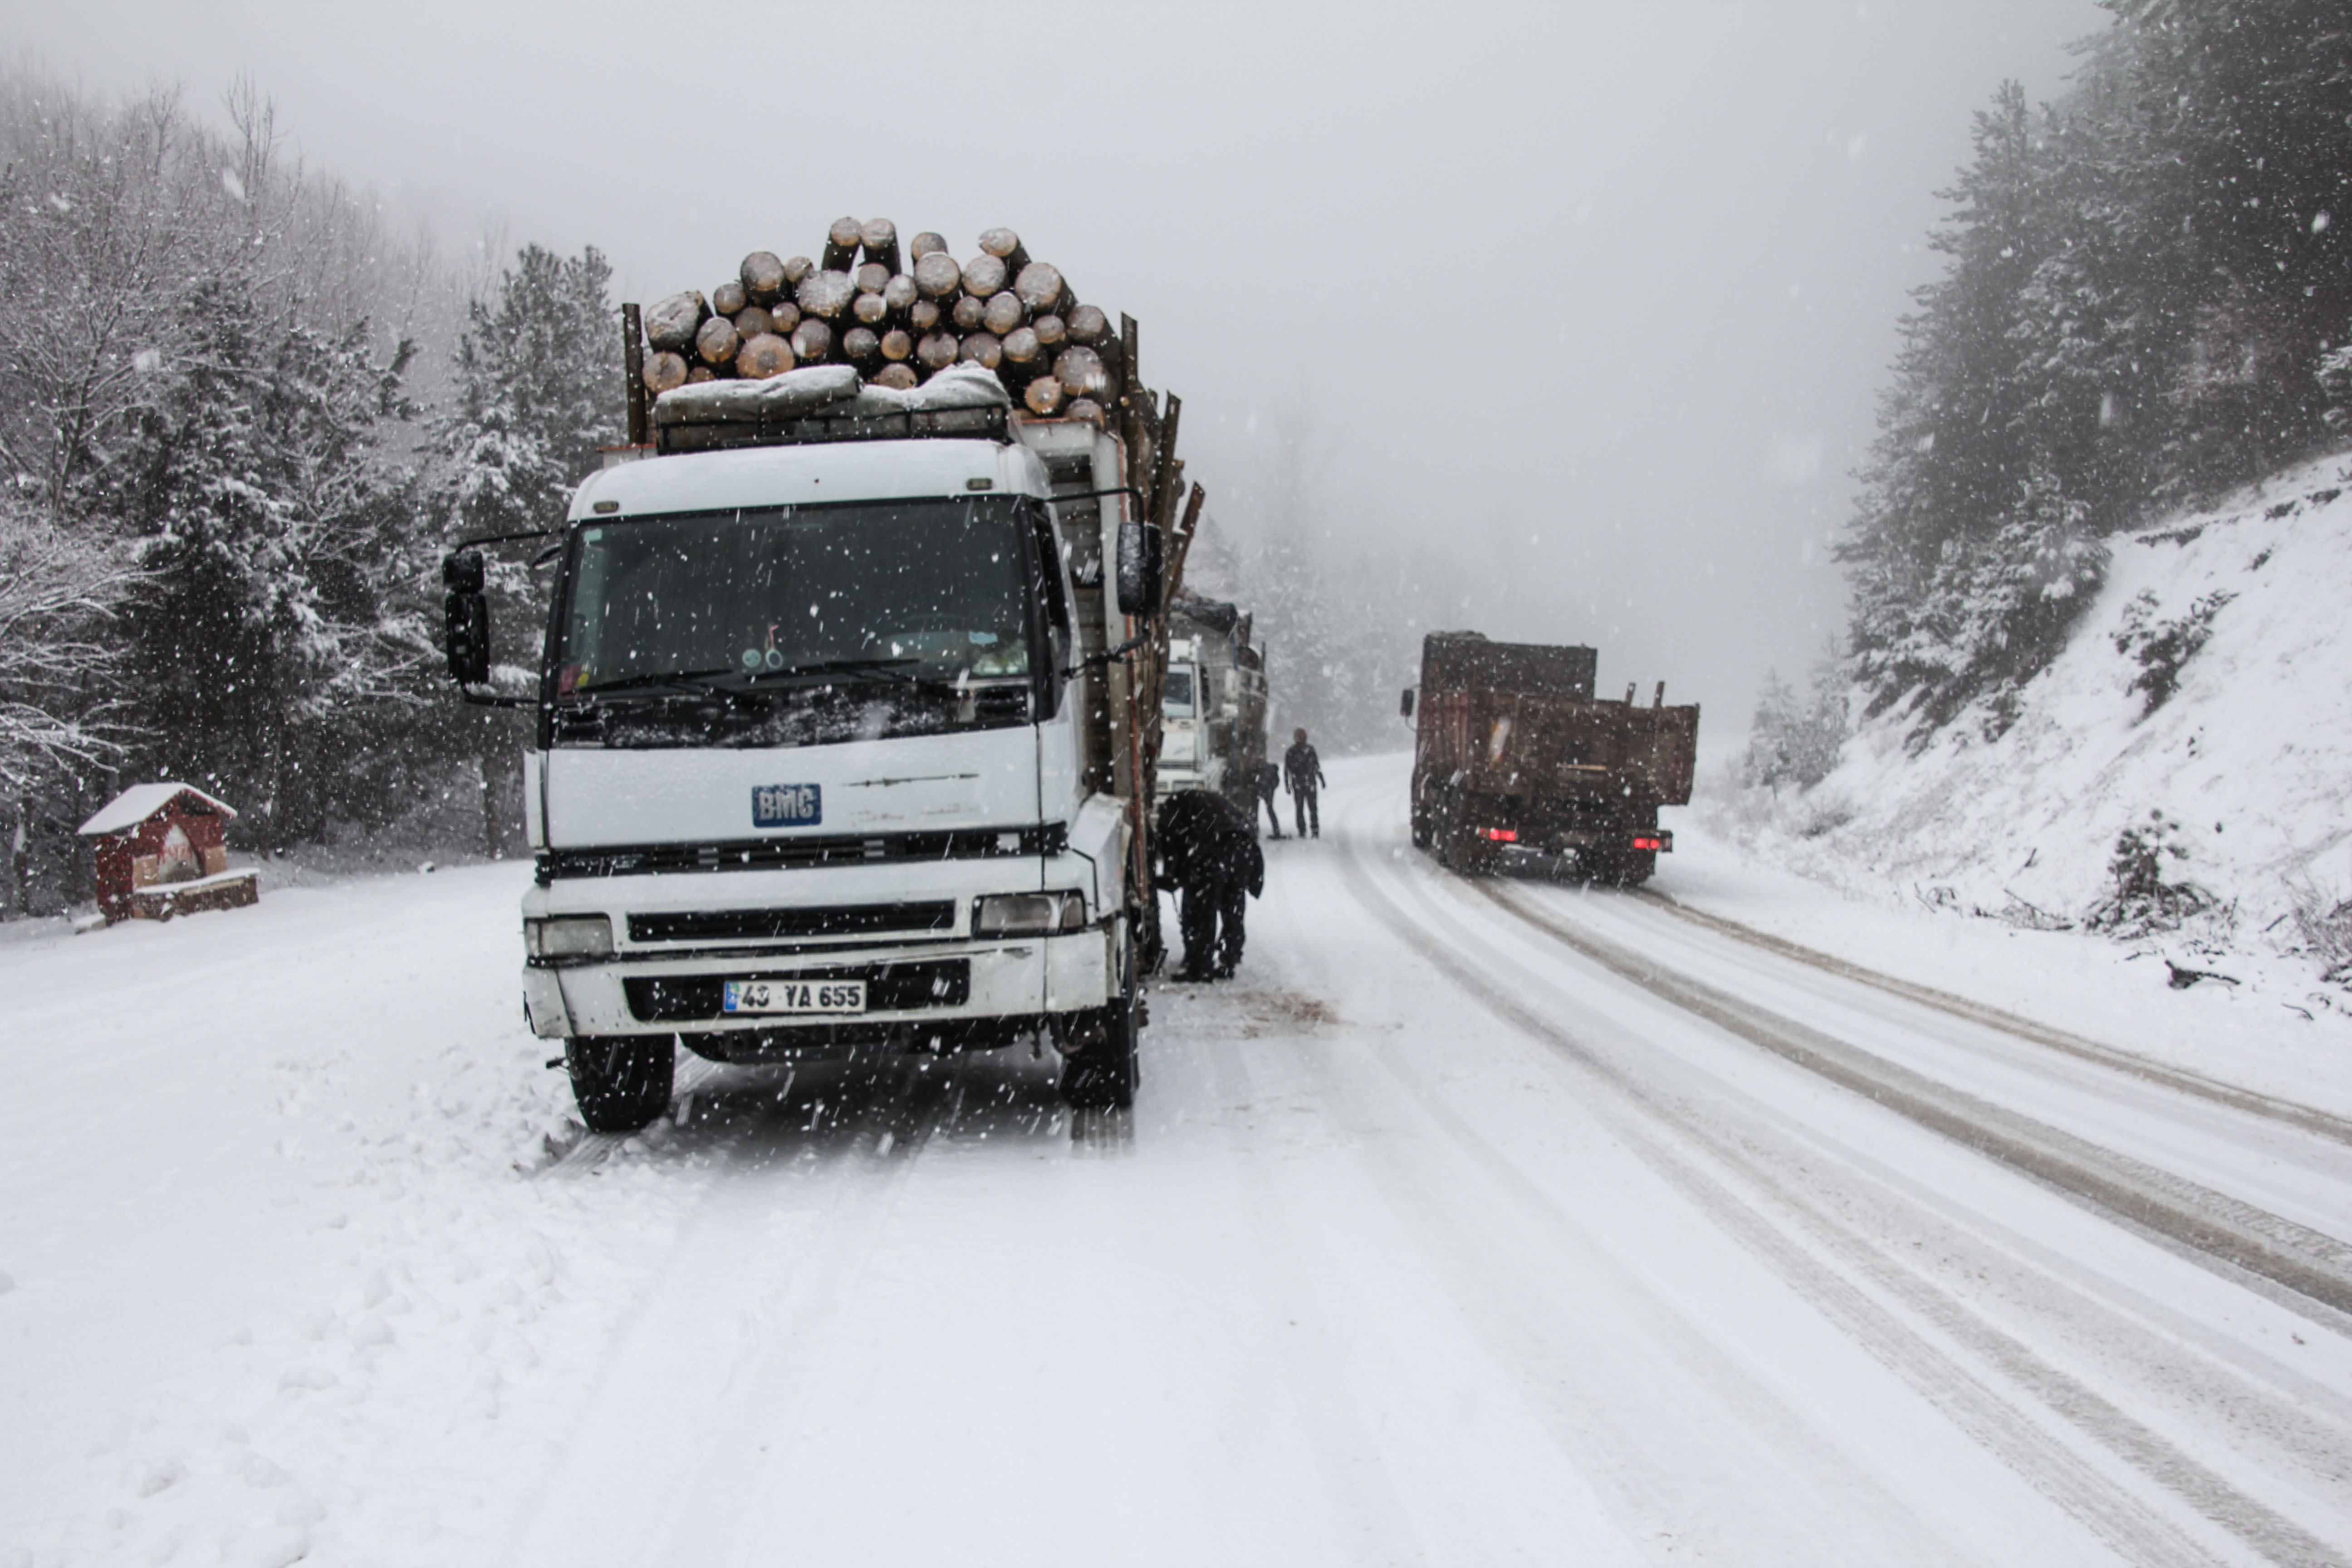 Kütahya'nın Domaniç ile Bursa'nın İnegöl ilçeleri arasındaki karayolunda kar yağışı ve buzlanma nedeniyle ulaşım güçlükle sağlanıyor.